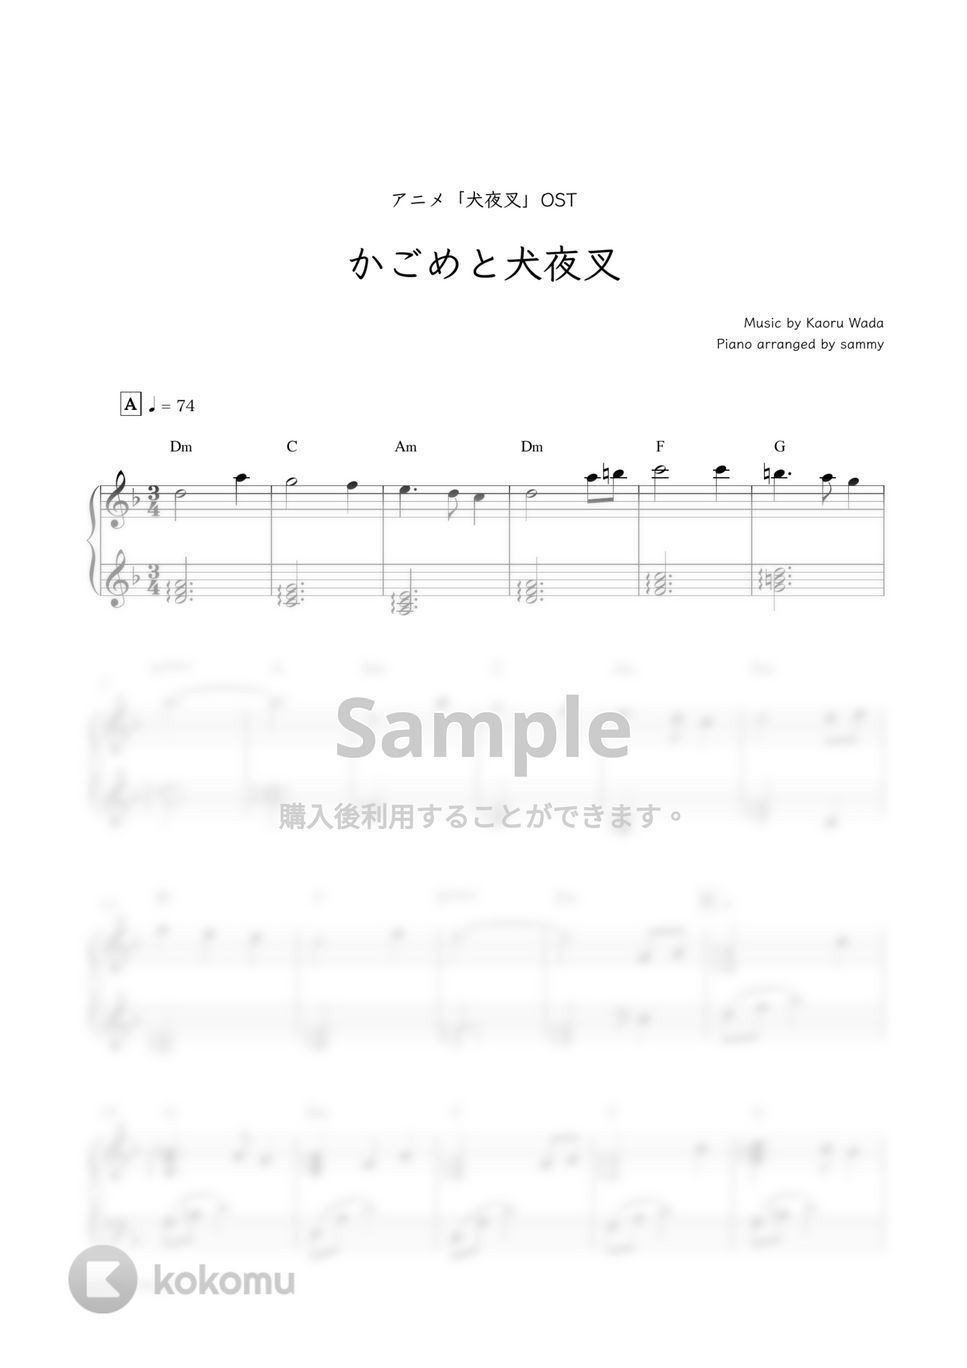 アニメ『犬夜叉』OST - かごめと犬夜叉 by sammy